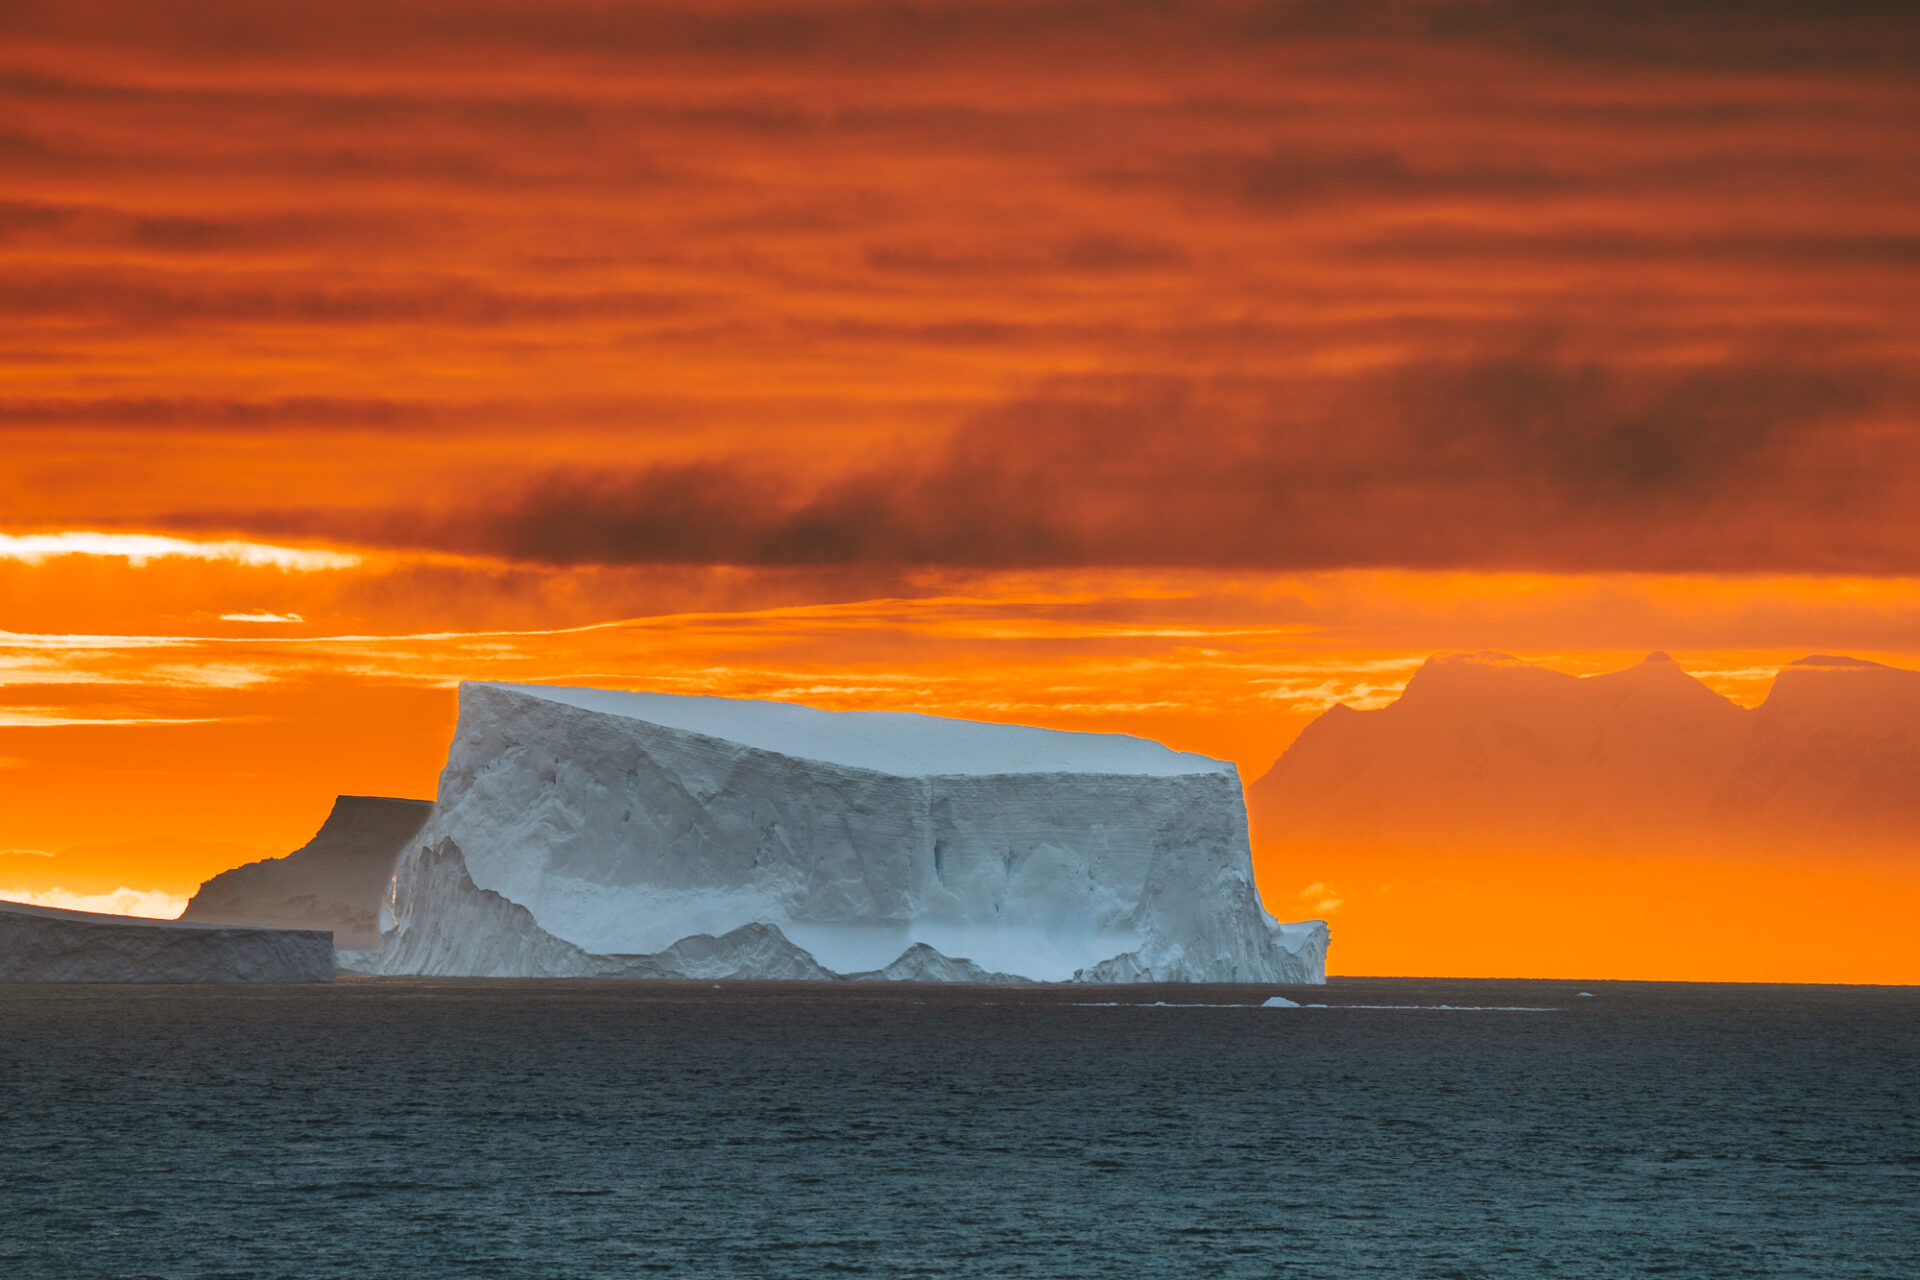 Iceberg against the fiery sky